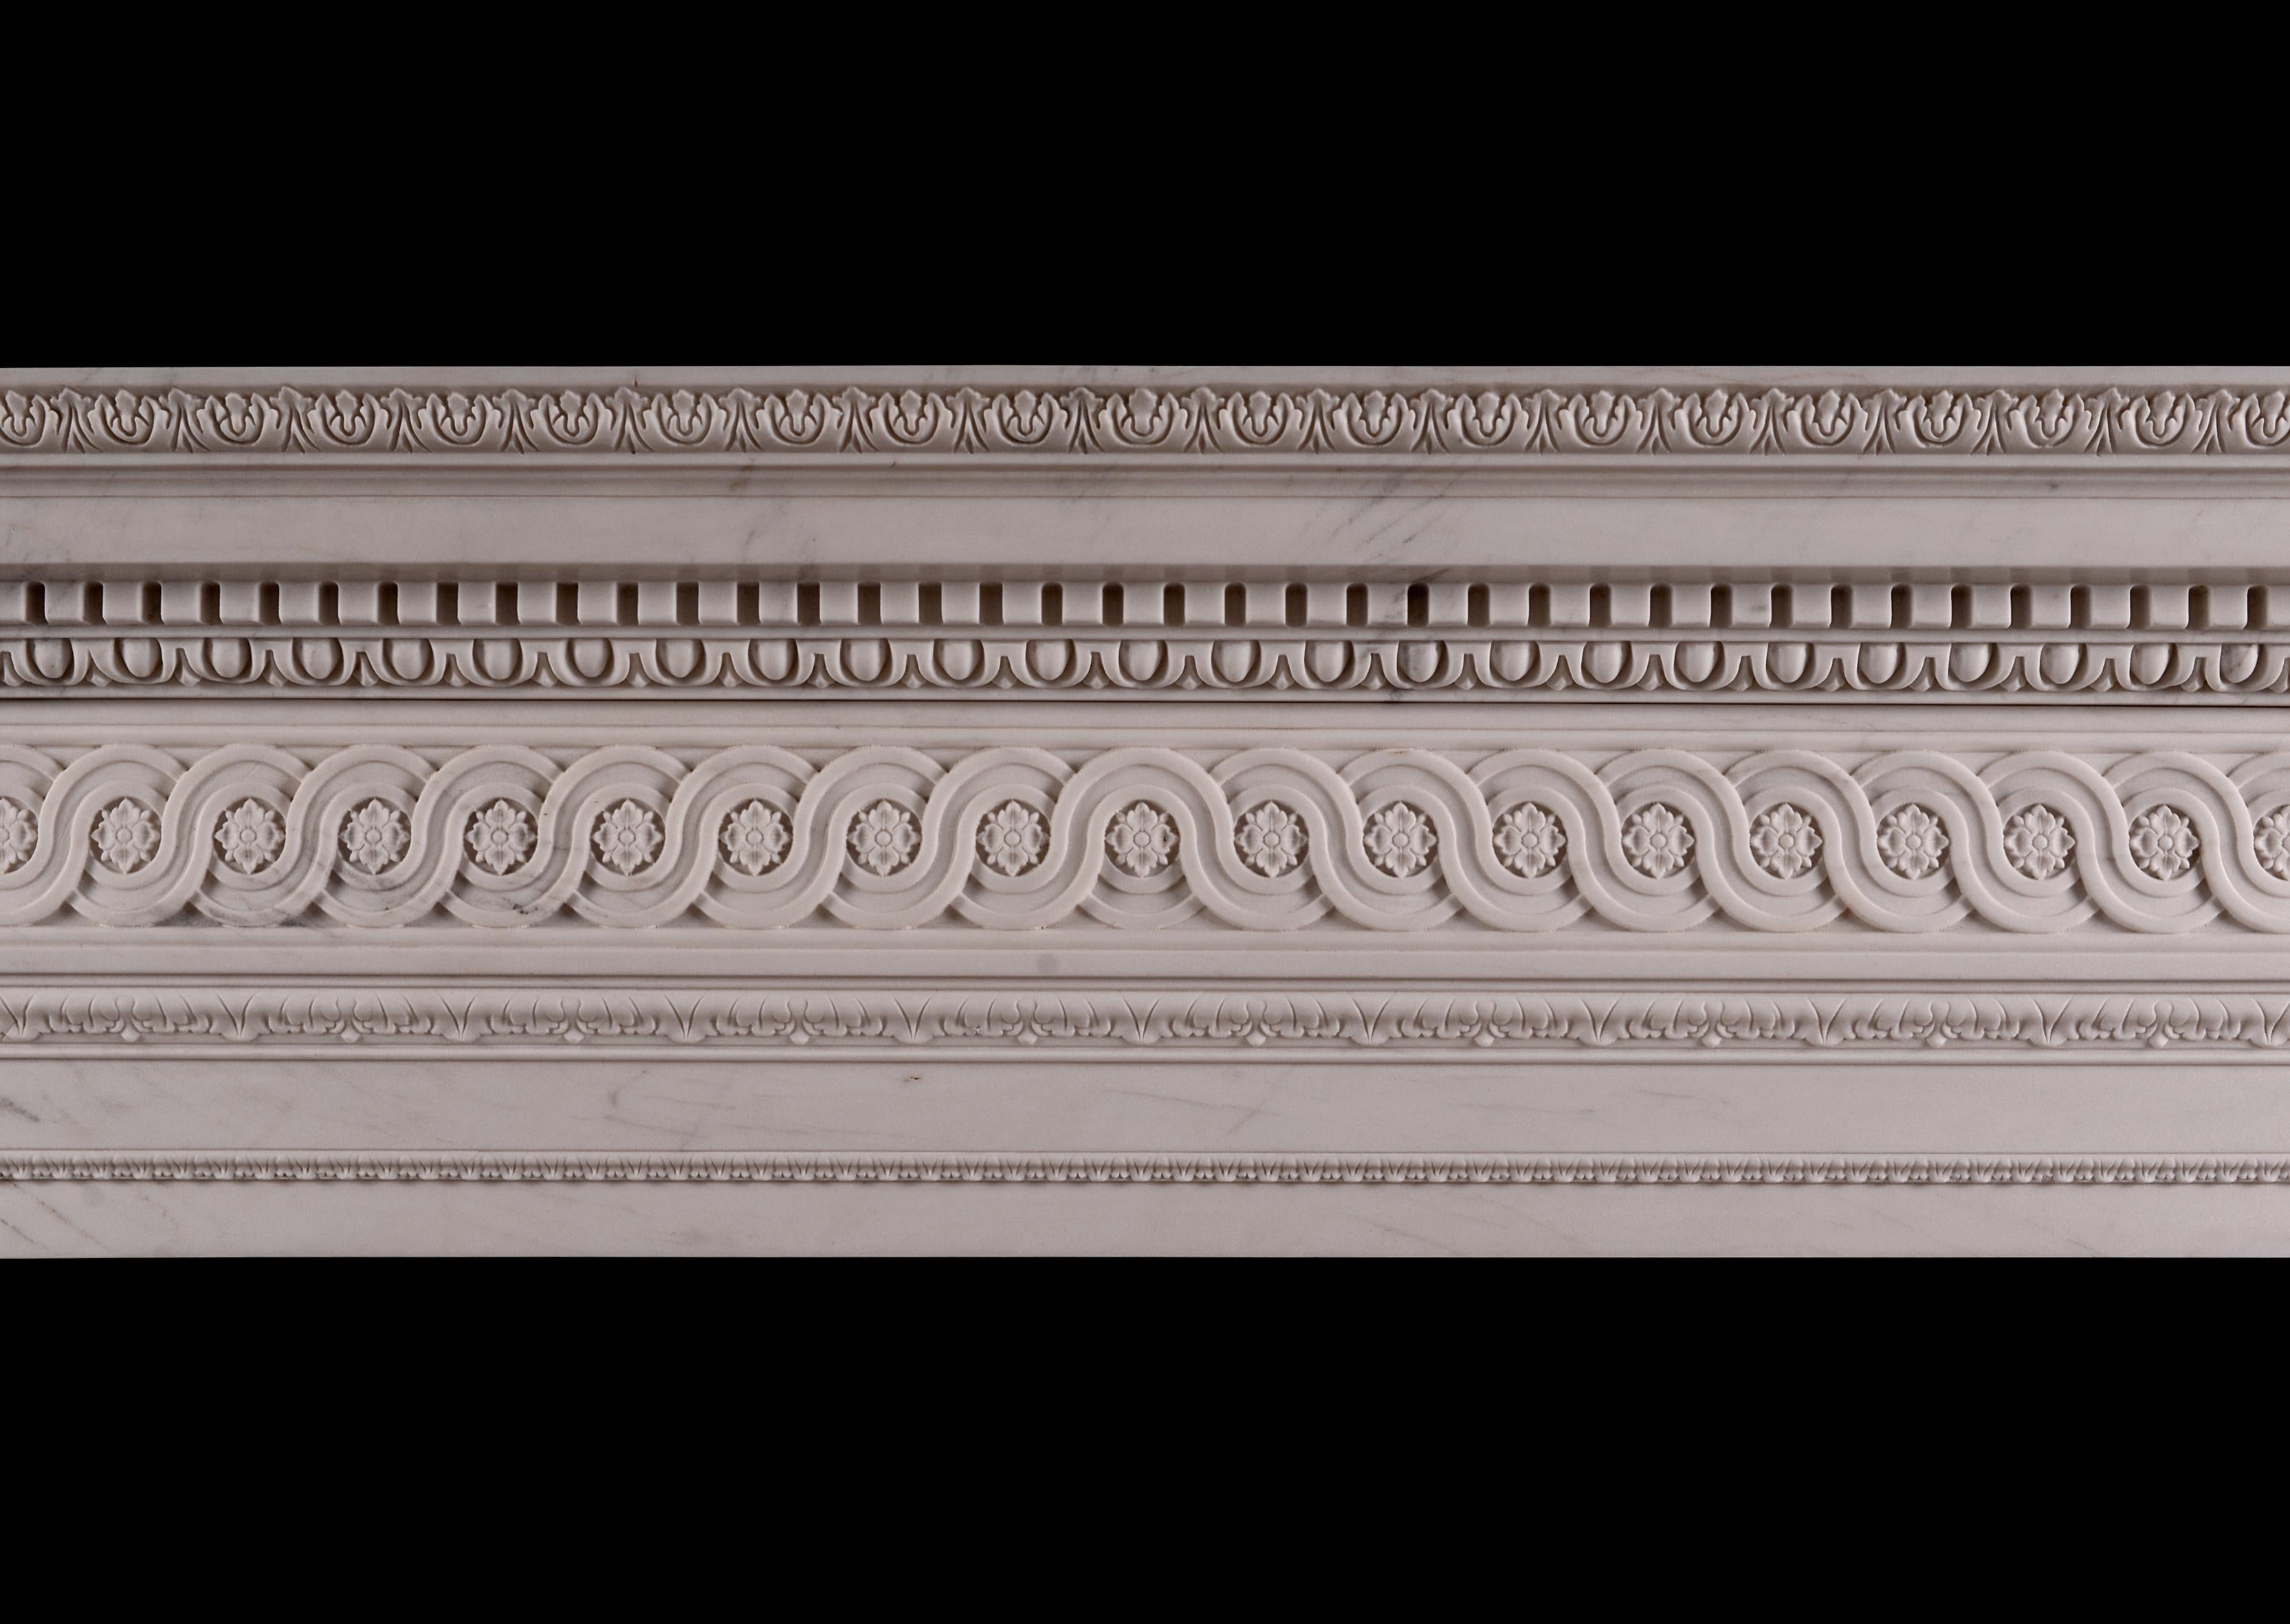 Ein Kamin im späten georgianischen Stil, der aus weißem Marmor gefertigt ist. Die Pfosten und der Fries sind mit einem durchgehenden Band aus Guillochen verziert, das Rosetten und geschnitzte Blattformen einschließt. Das Regal ist mit